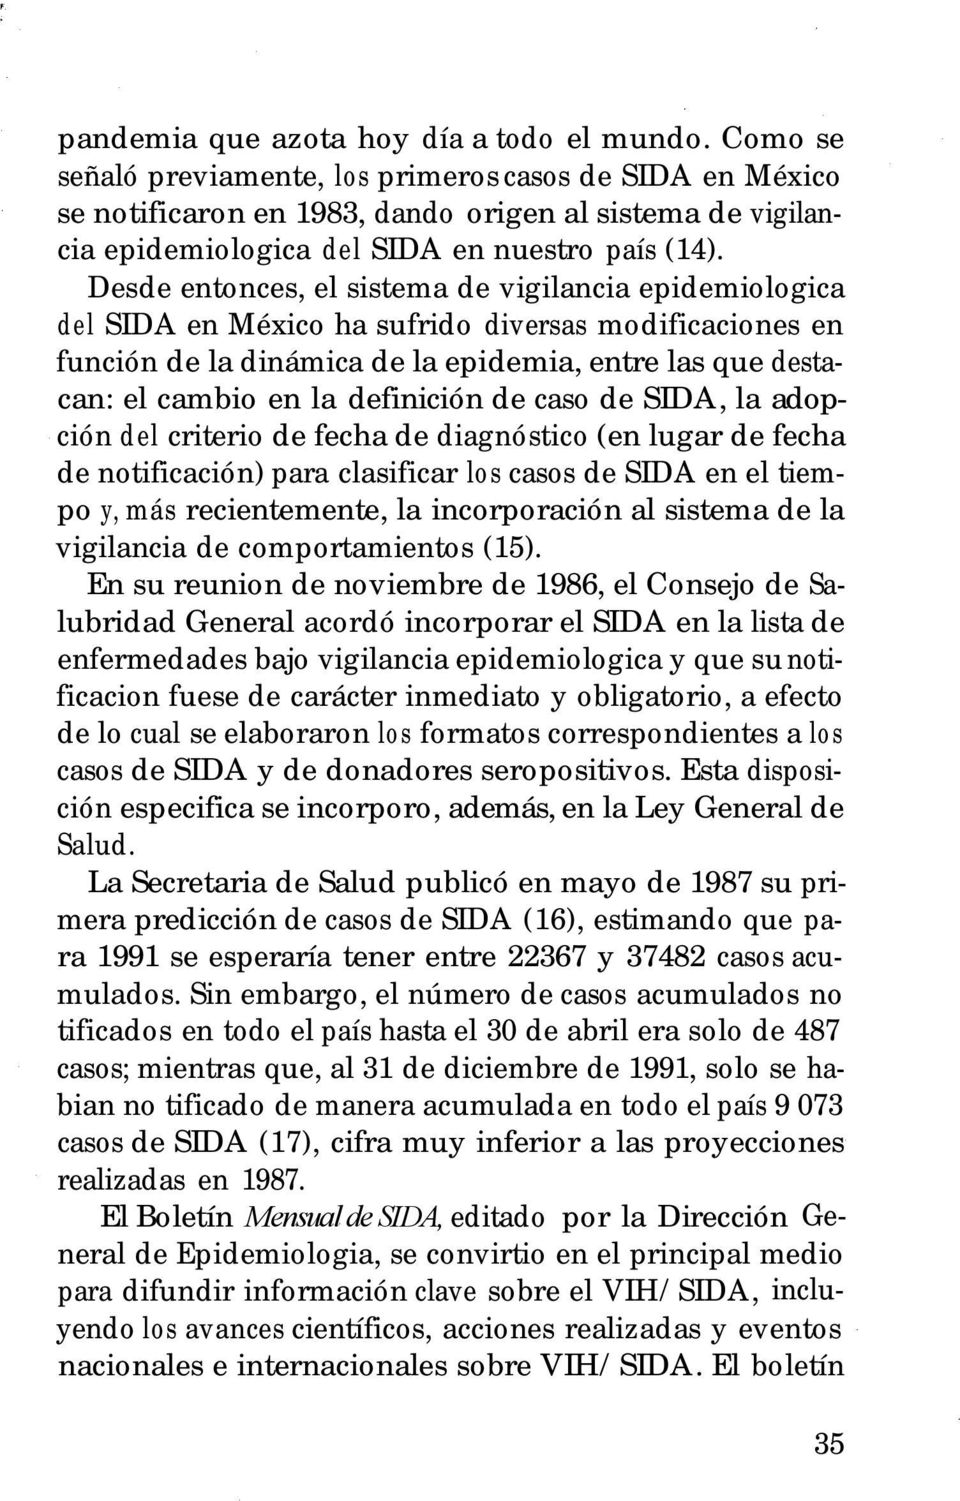 Desde entonces, el sistema de vigilancia epidemiologica del SIDA en México ha sufrido diversas modificaciones en función de la dinámica de la epidemia, entre las que destacan: el cambio en la